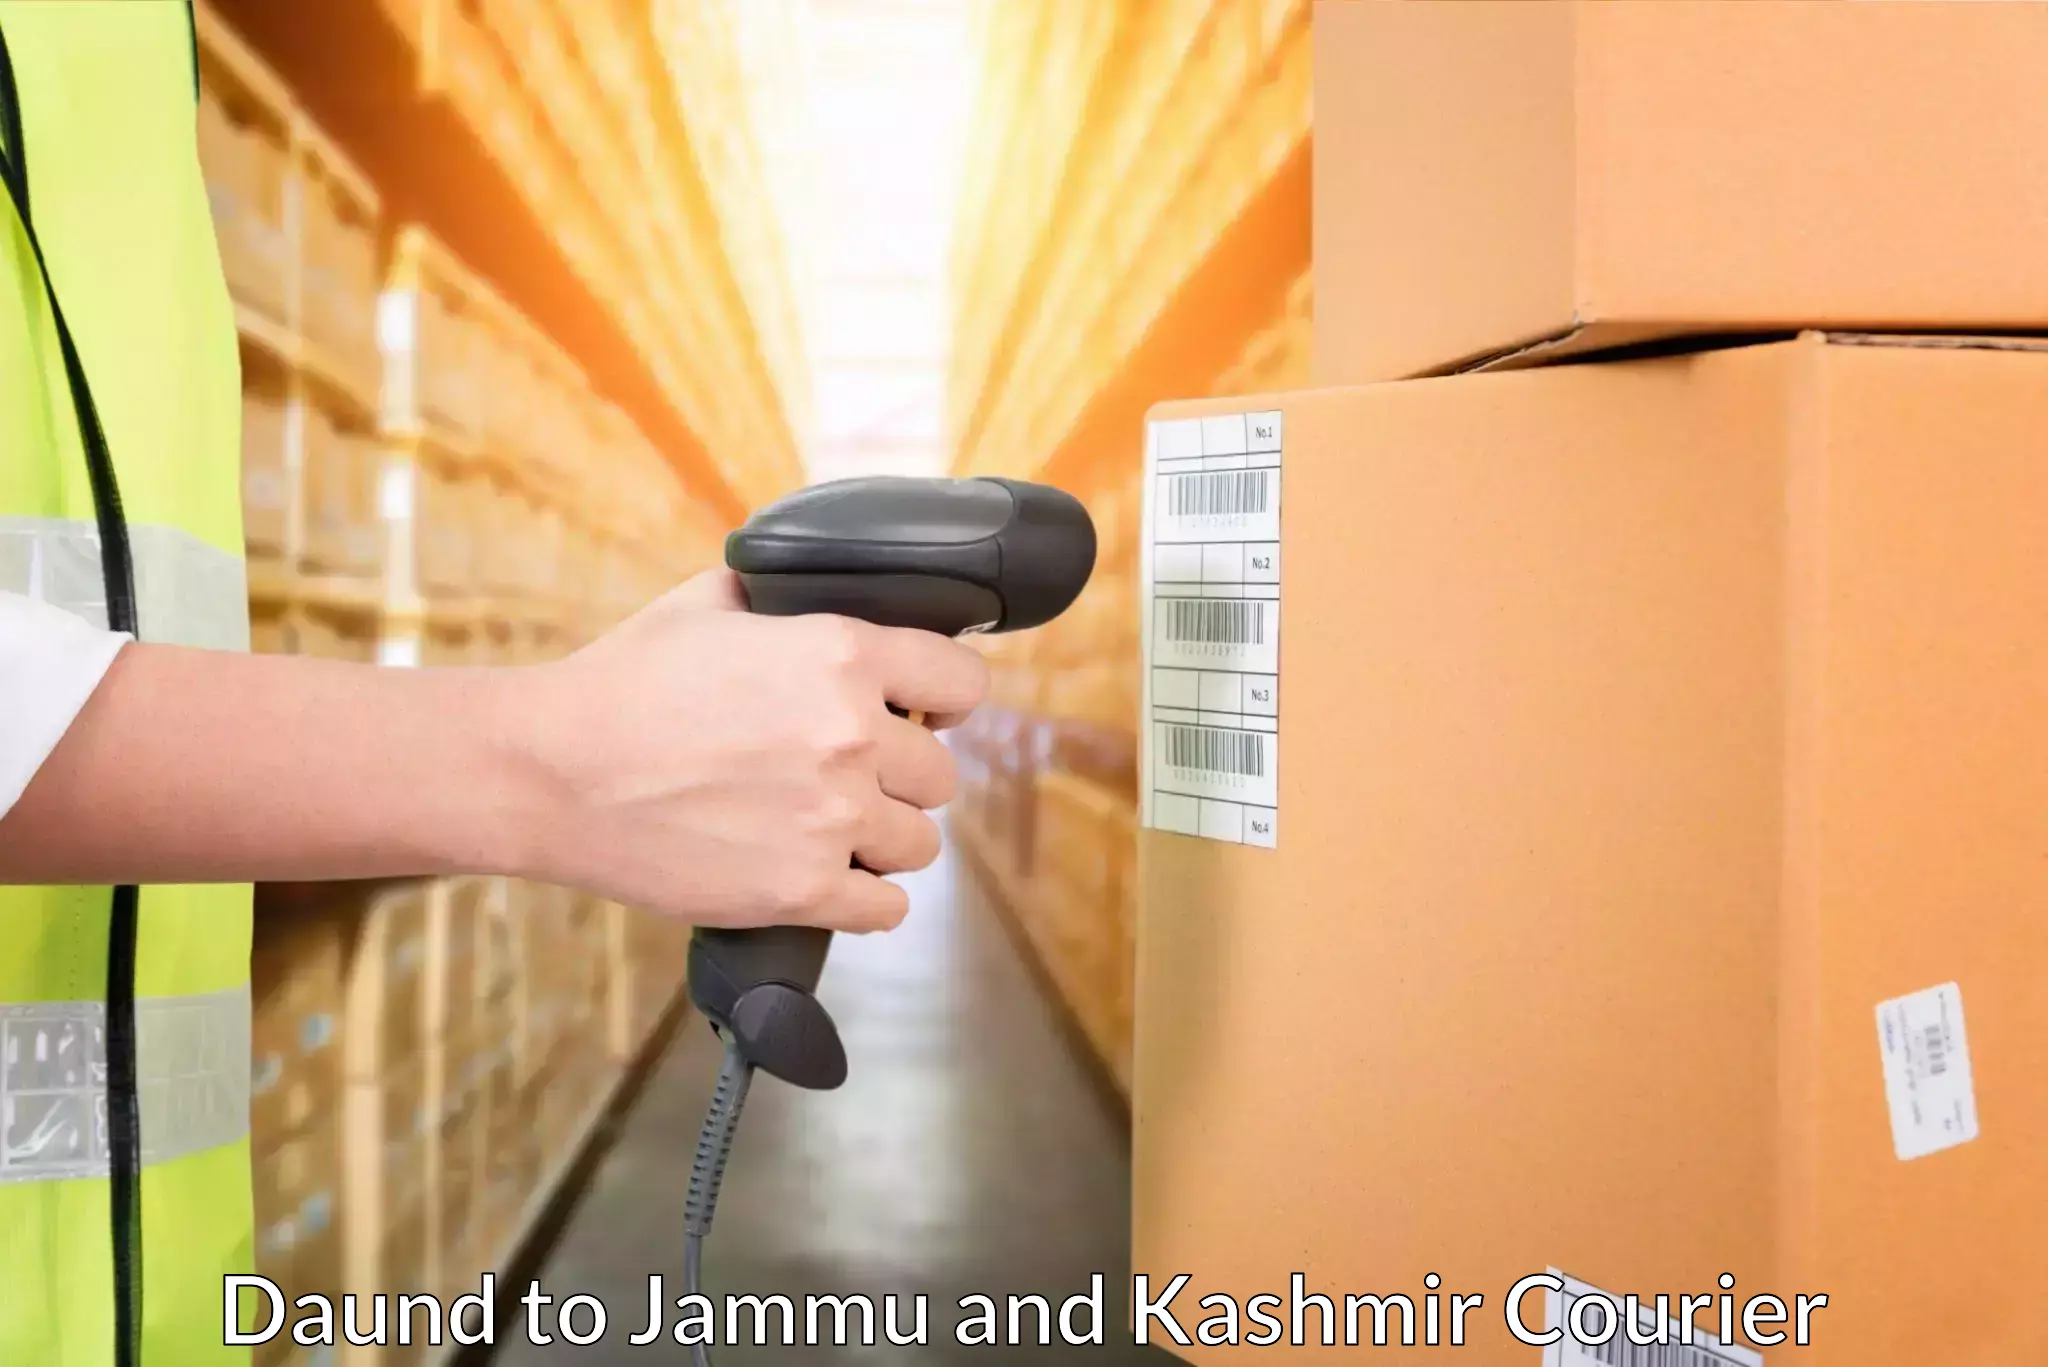 Seamless shipping service Daund to NIT Srinagar